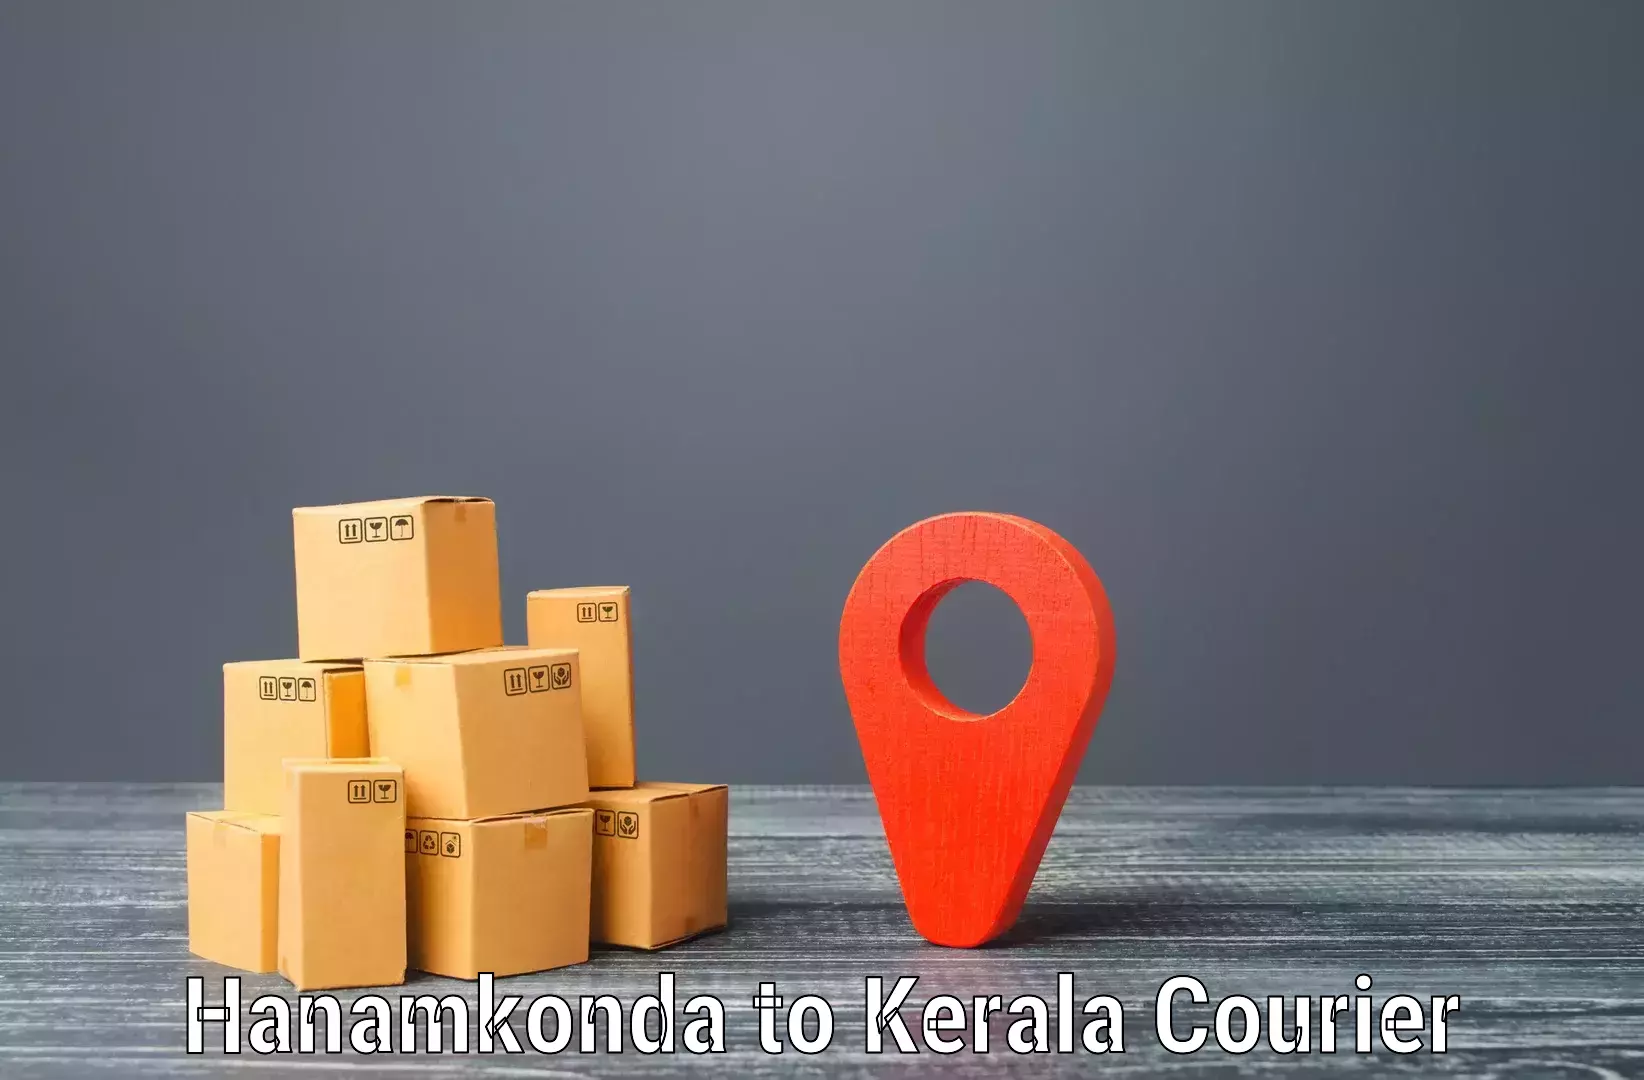 24-hour delivery options Hanamkonda to Koothattukulam